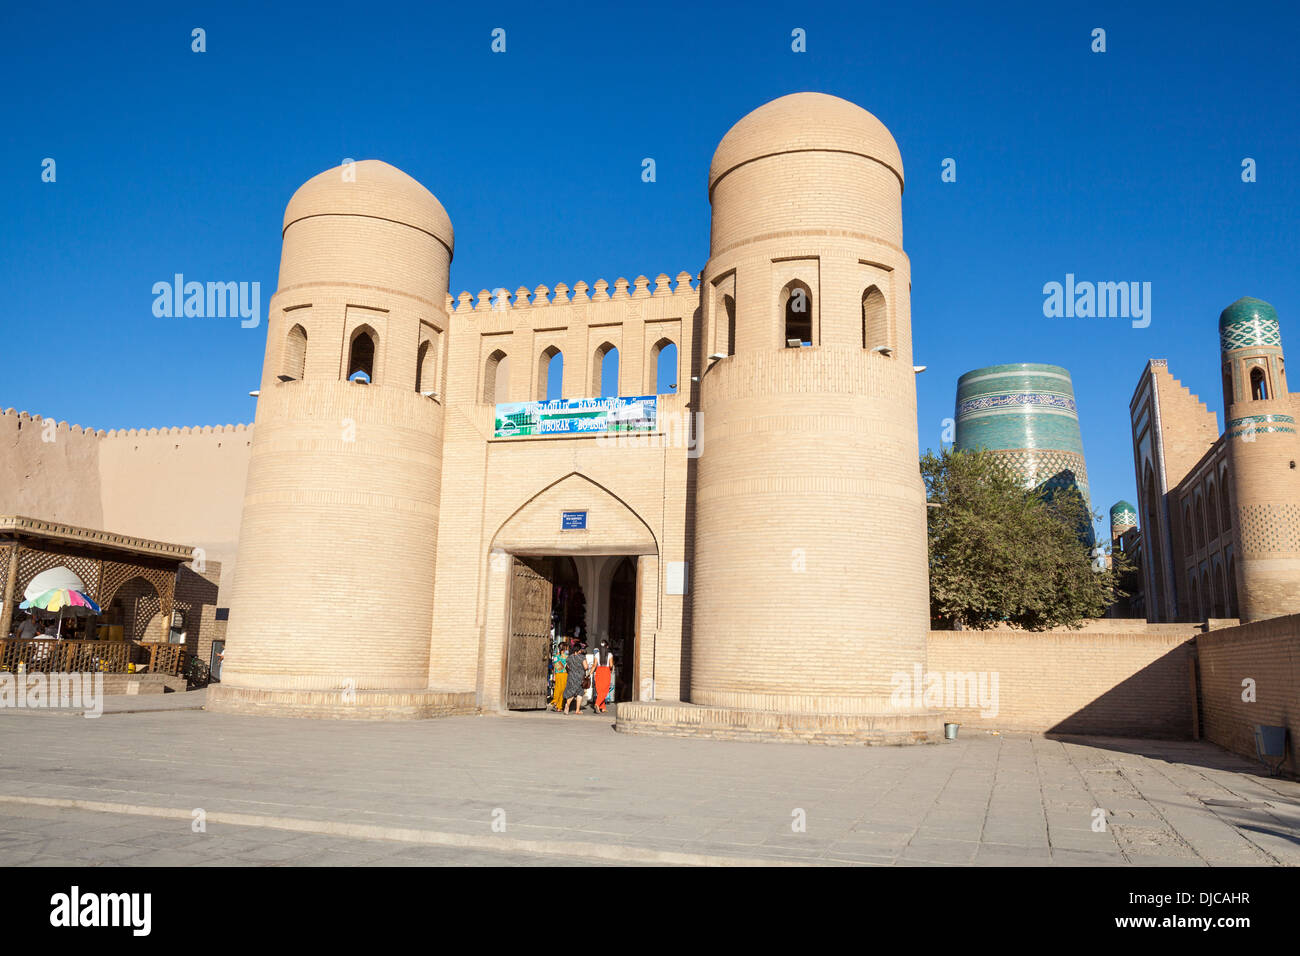 Moulanga, l'une des portes de la ville historique, l'Ichan Kala, Khiva, Ouzbékistan Banque D'Images